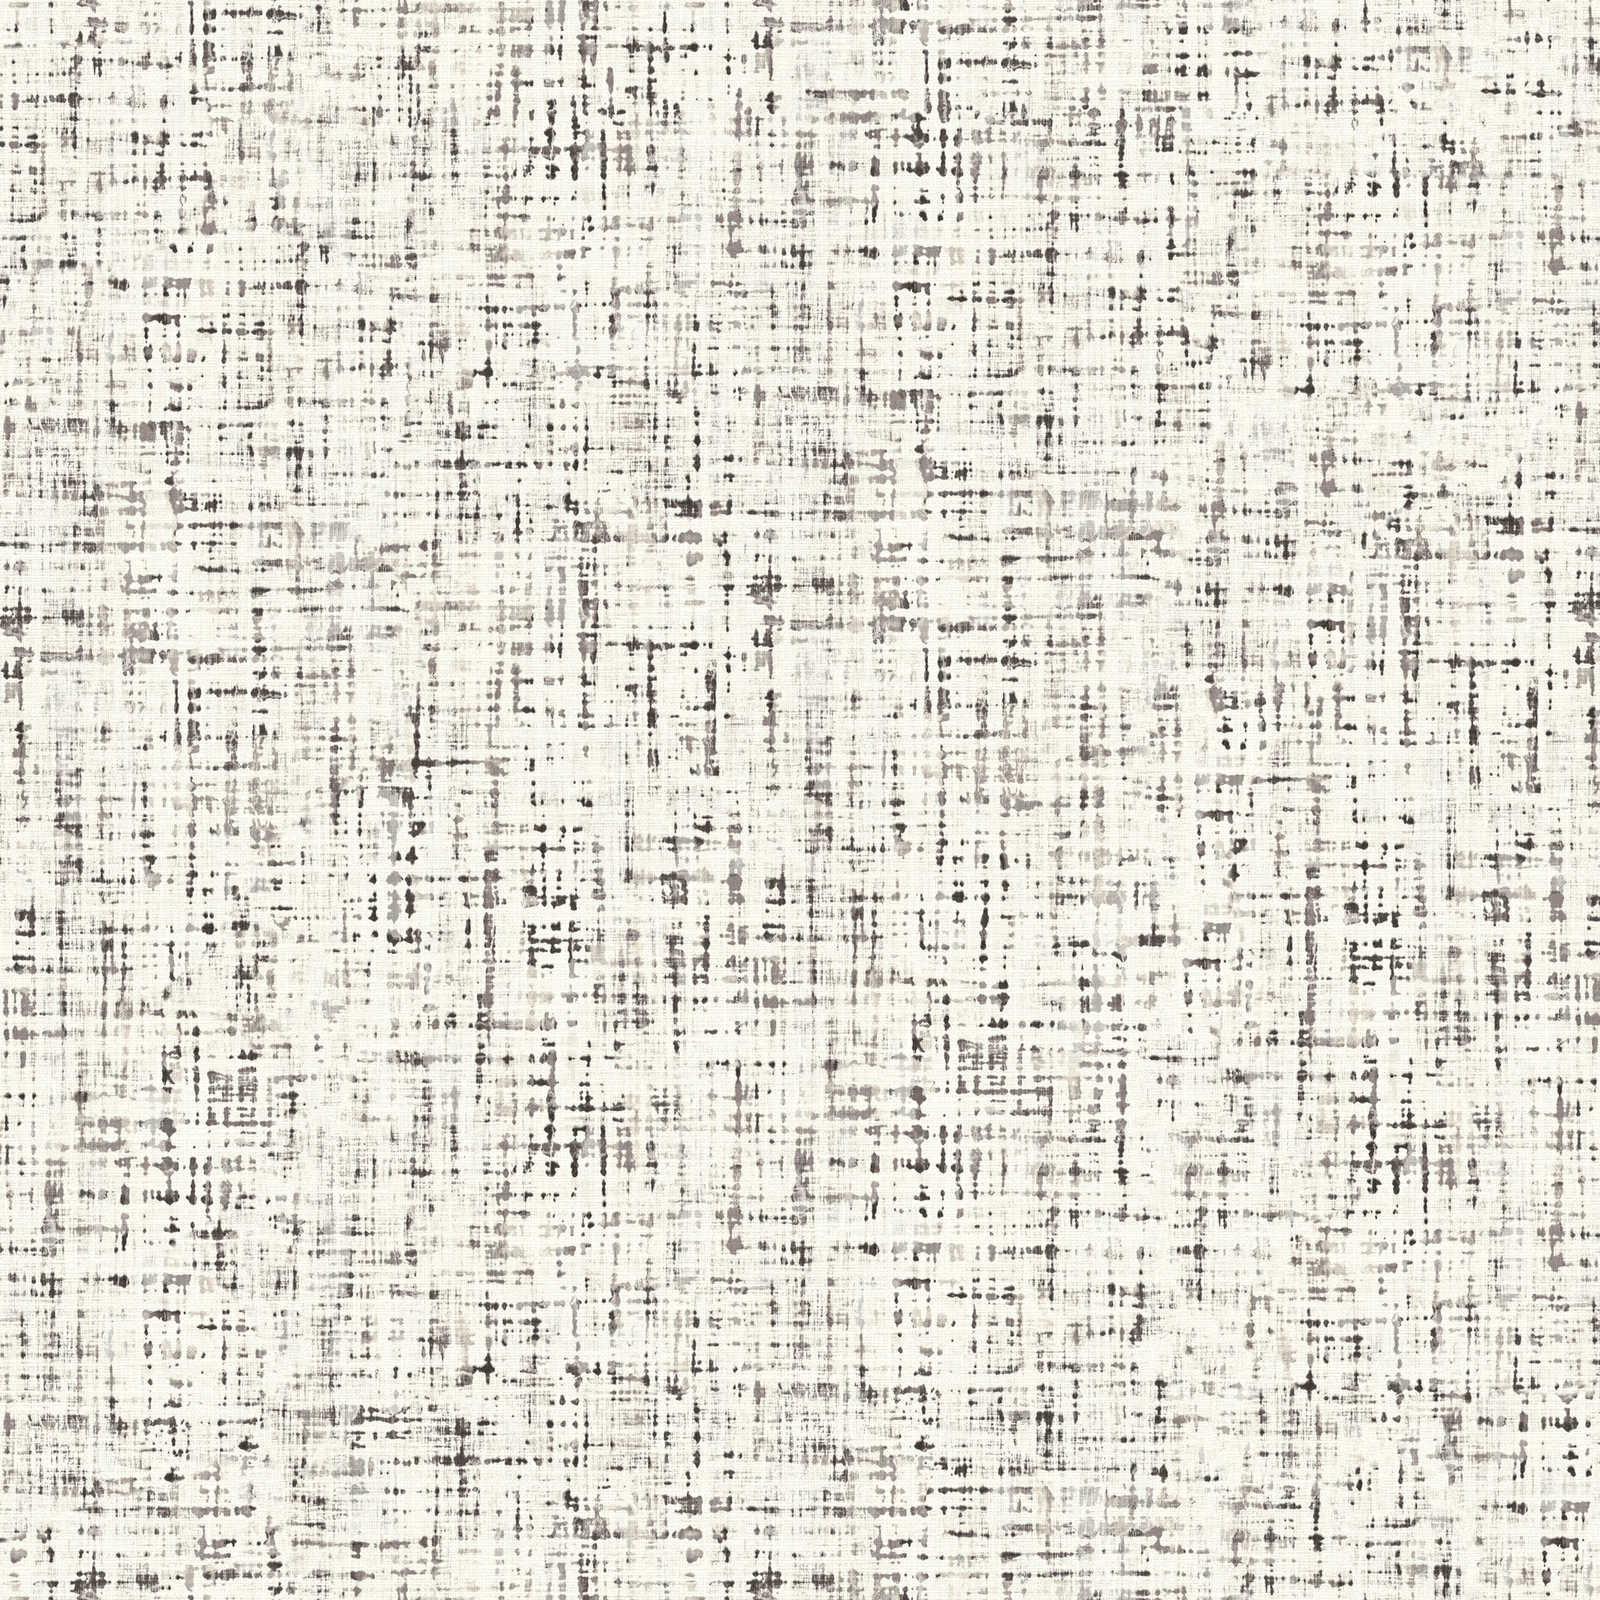 Patroonbehang tweed-look gevlekt, textiel-look - wit, grijs, zwart
